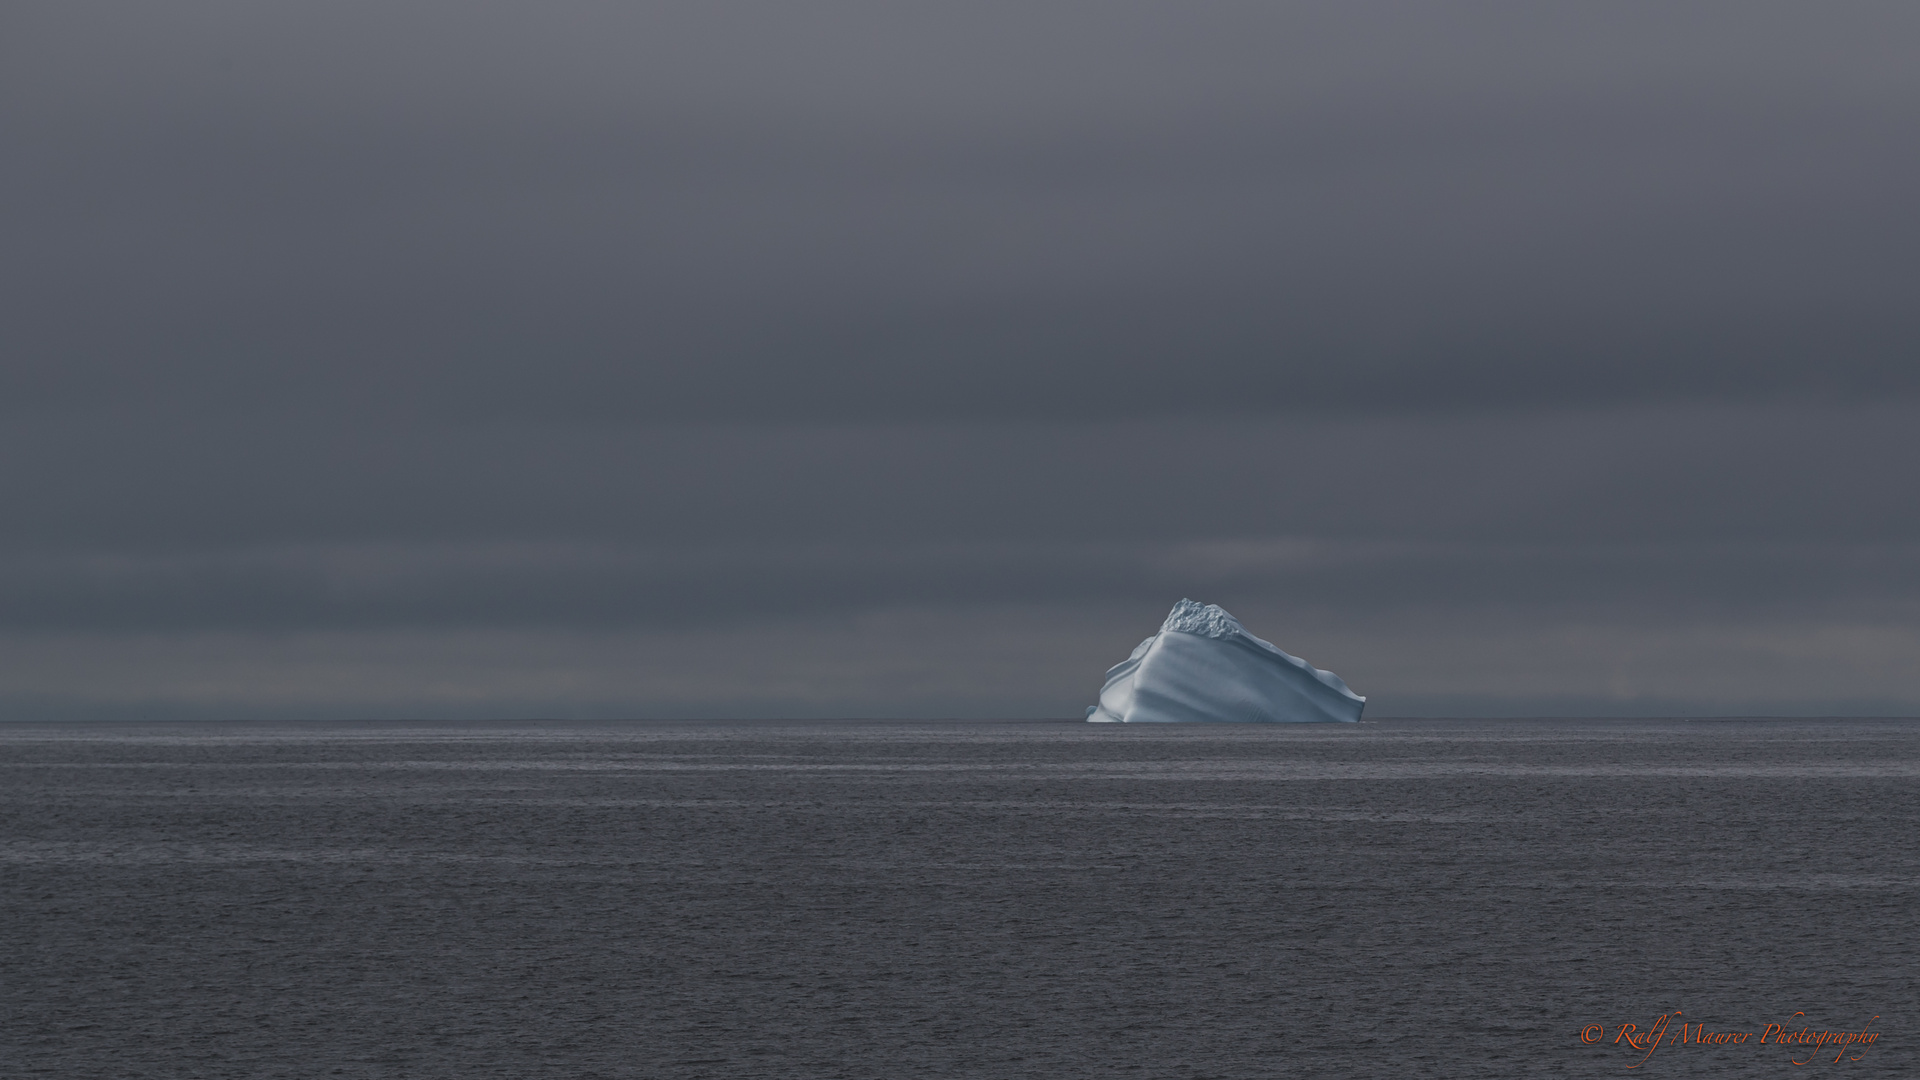 Satin-finished Iceberg